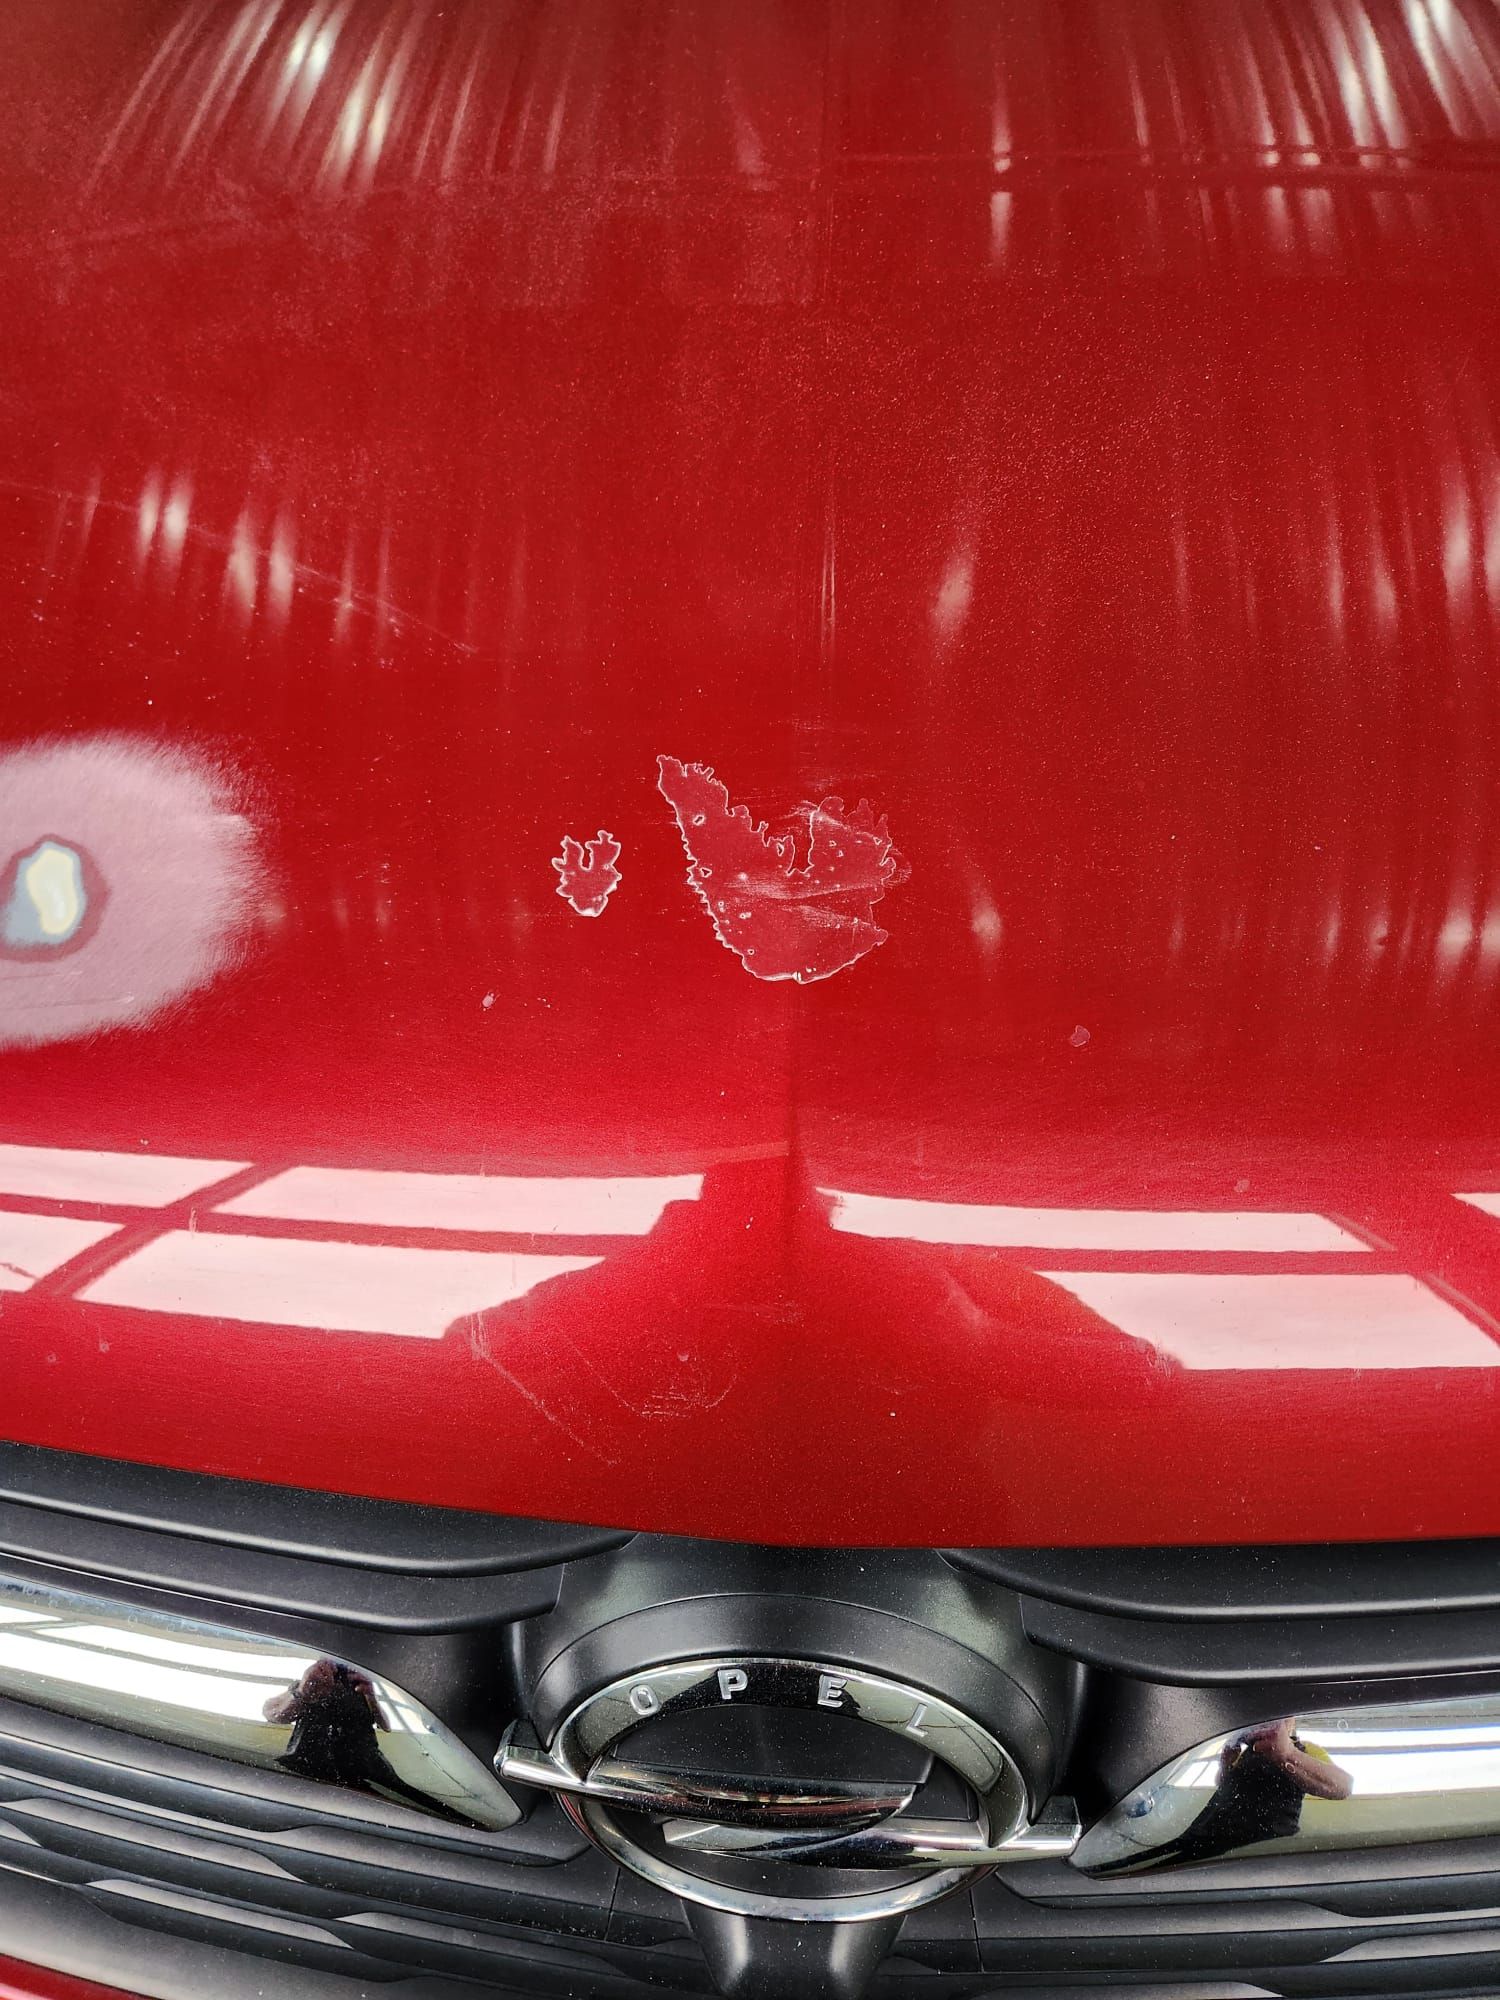 Een close-up van de motorkap met schade van een rode auto